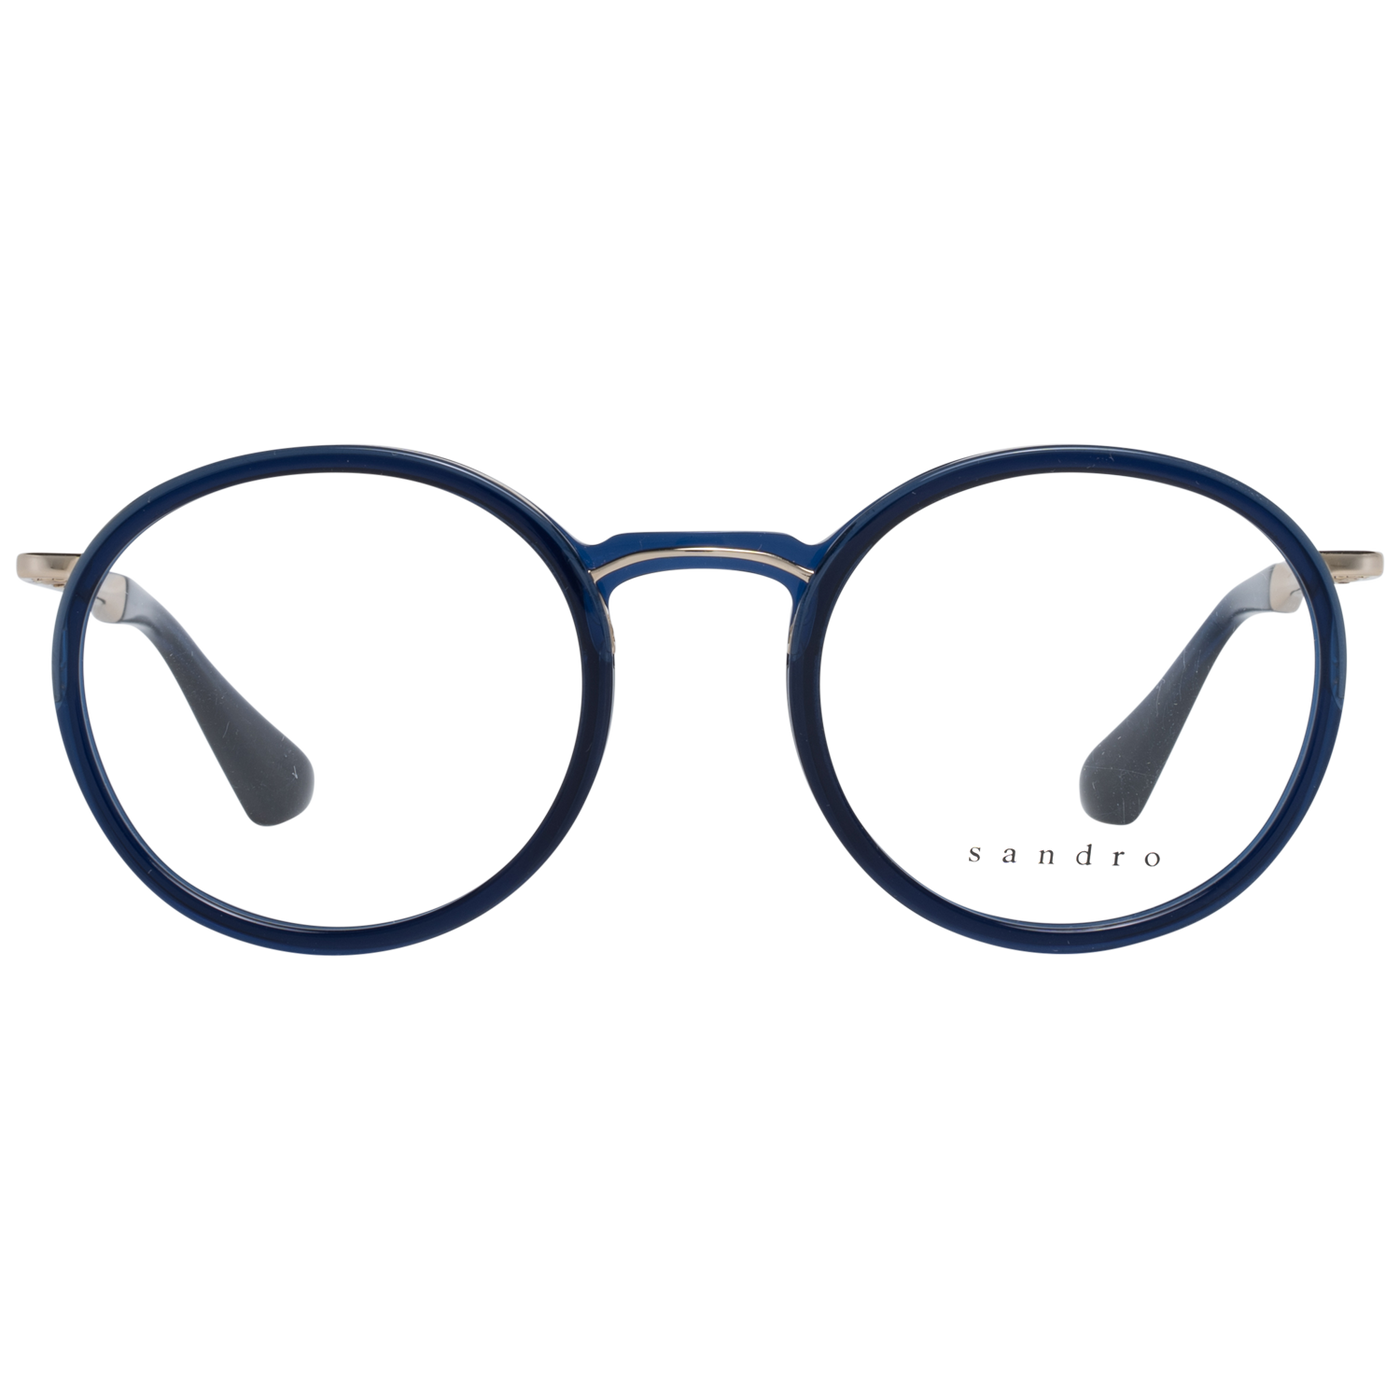 Sandro Blue Women Optical Frames